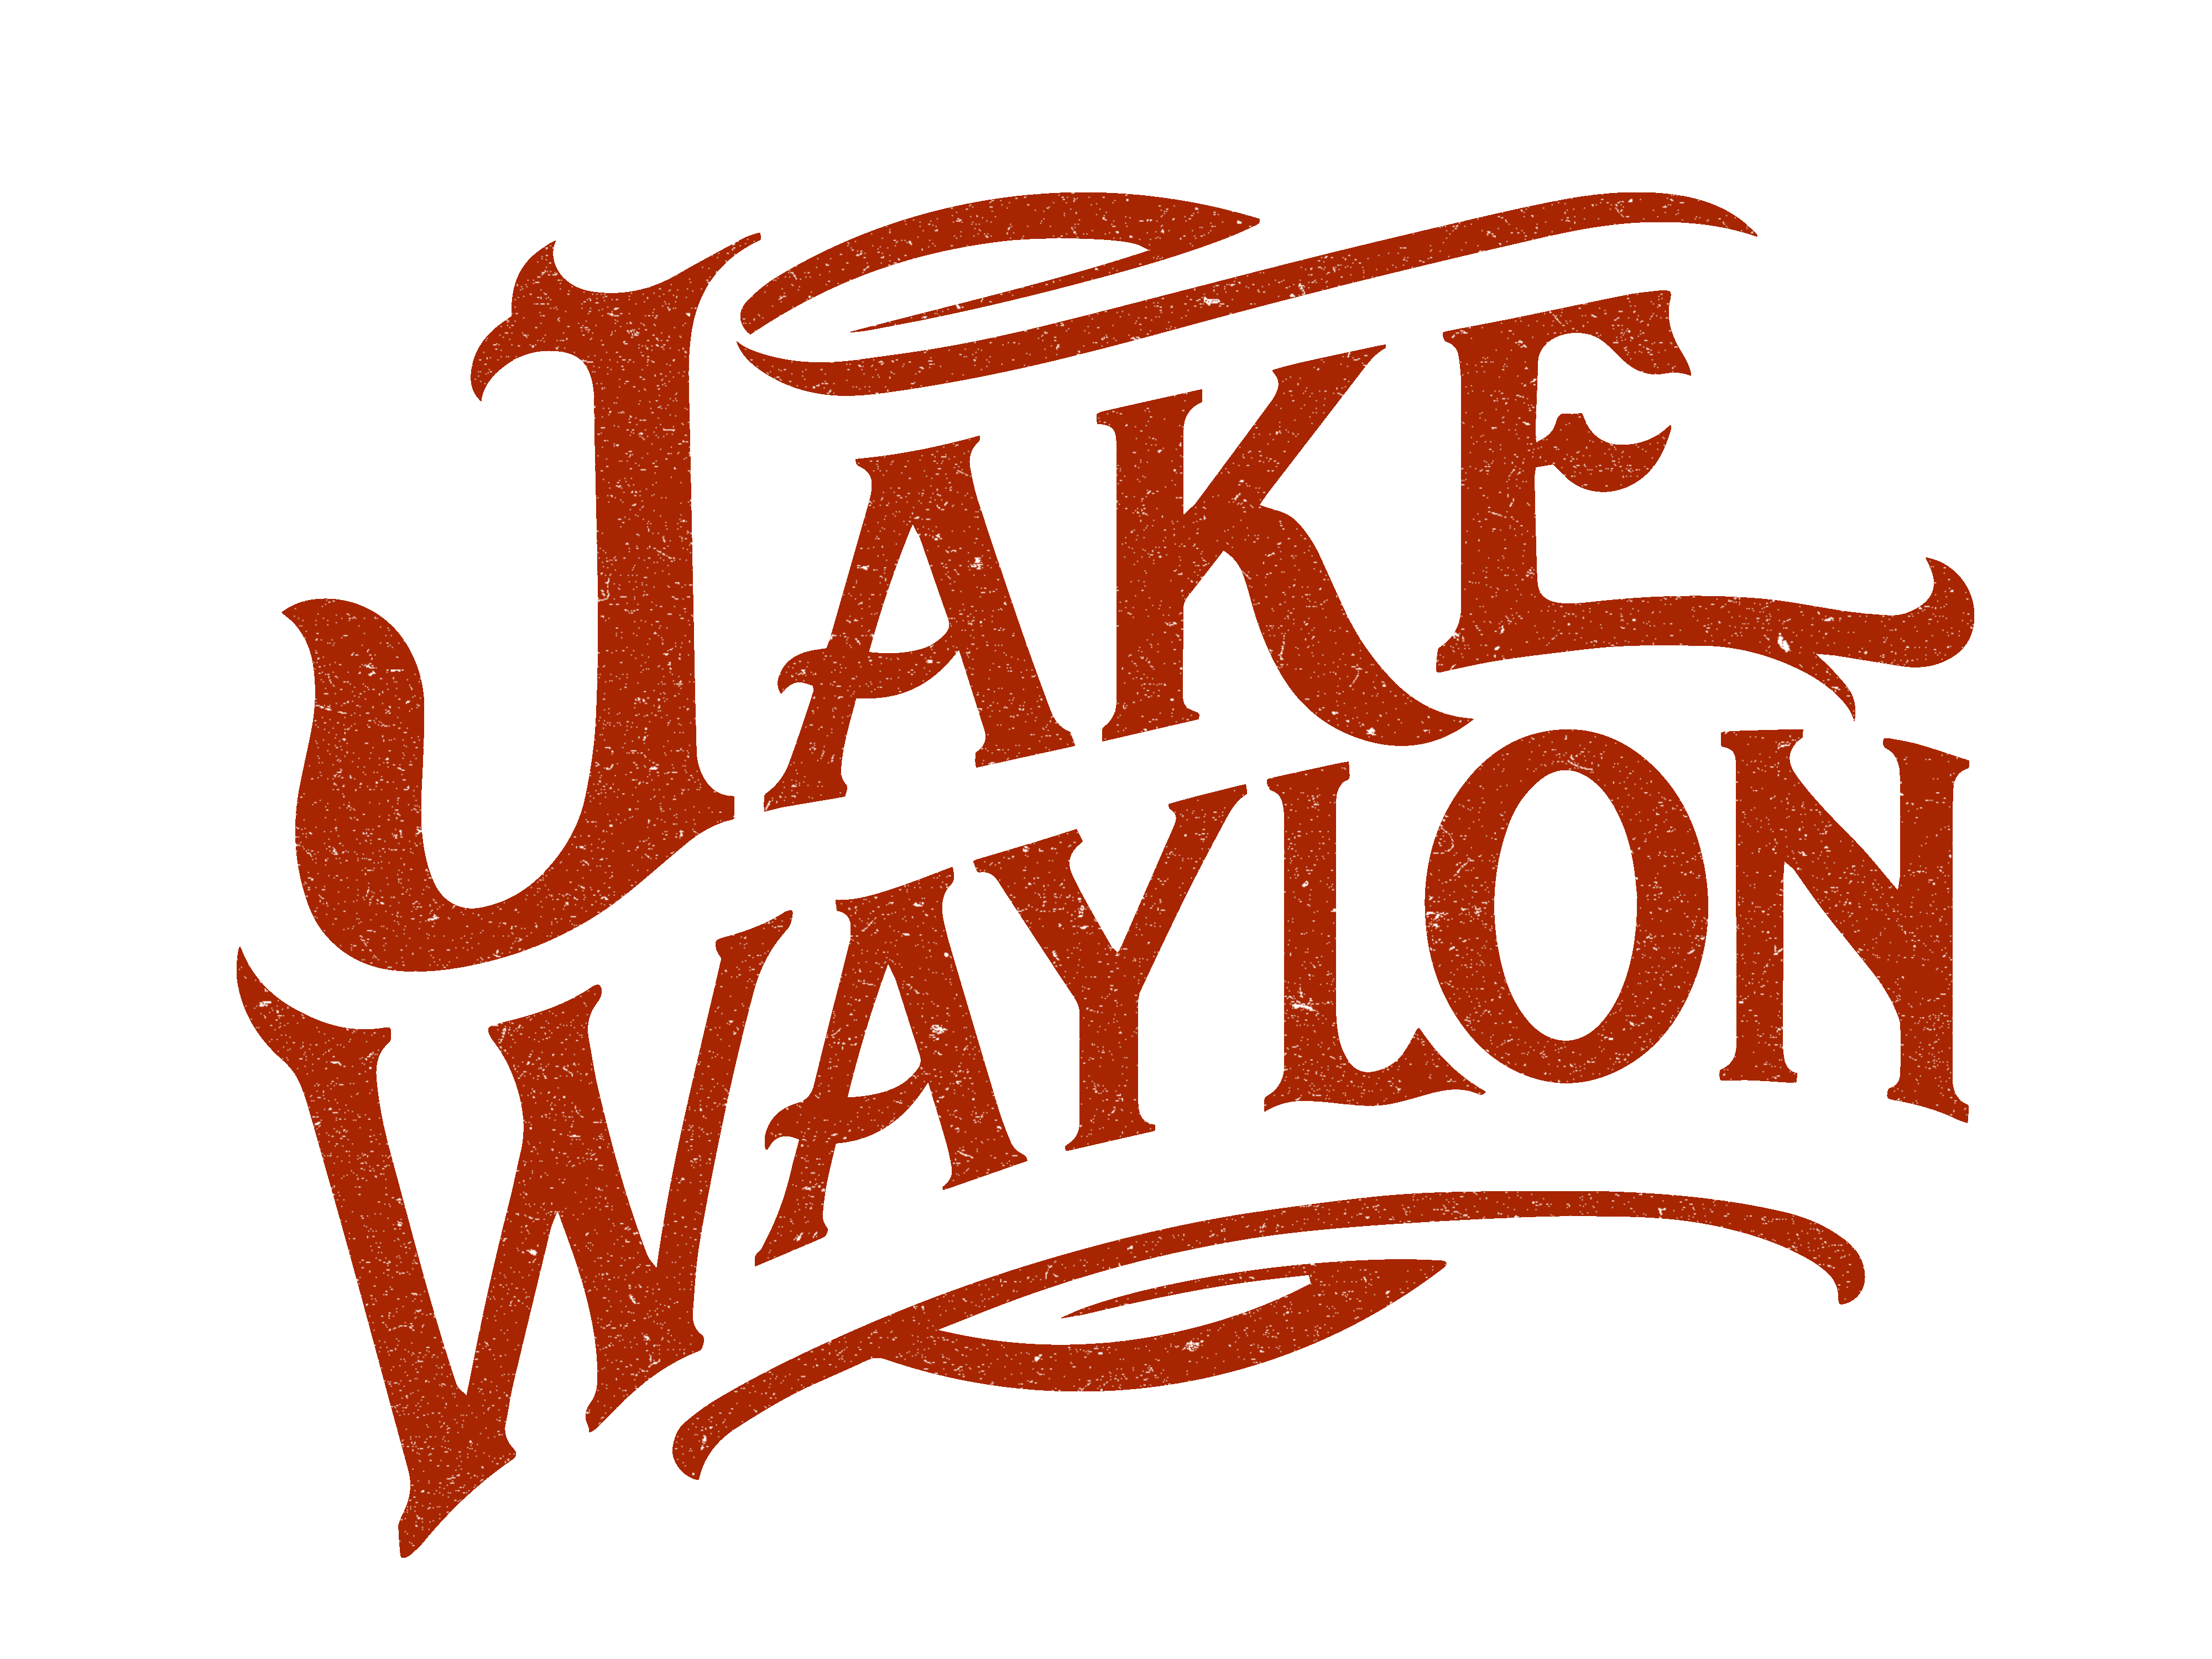 Jake Waylon